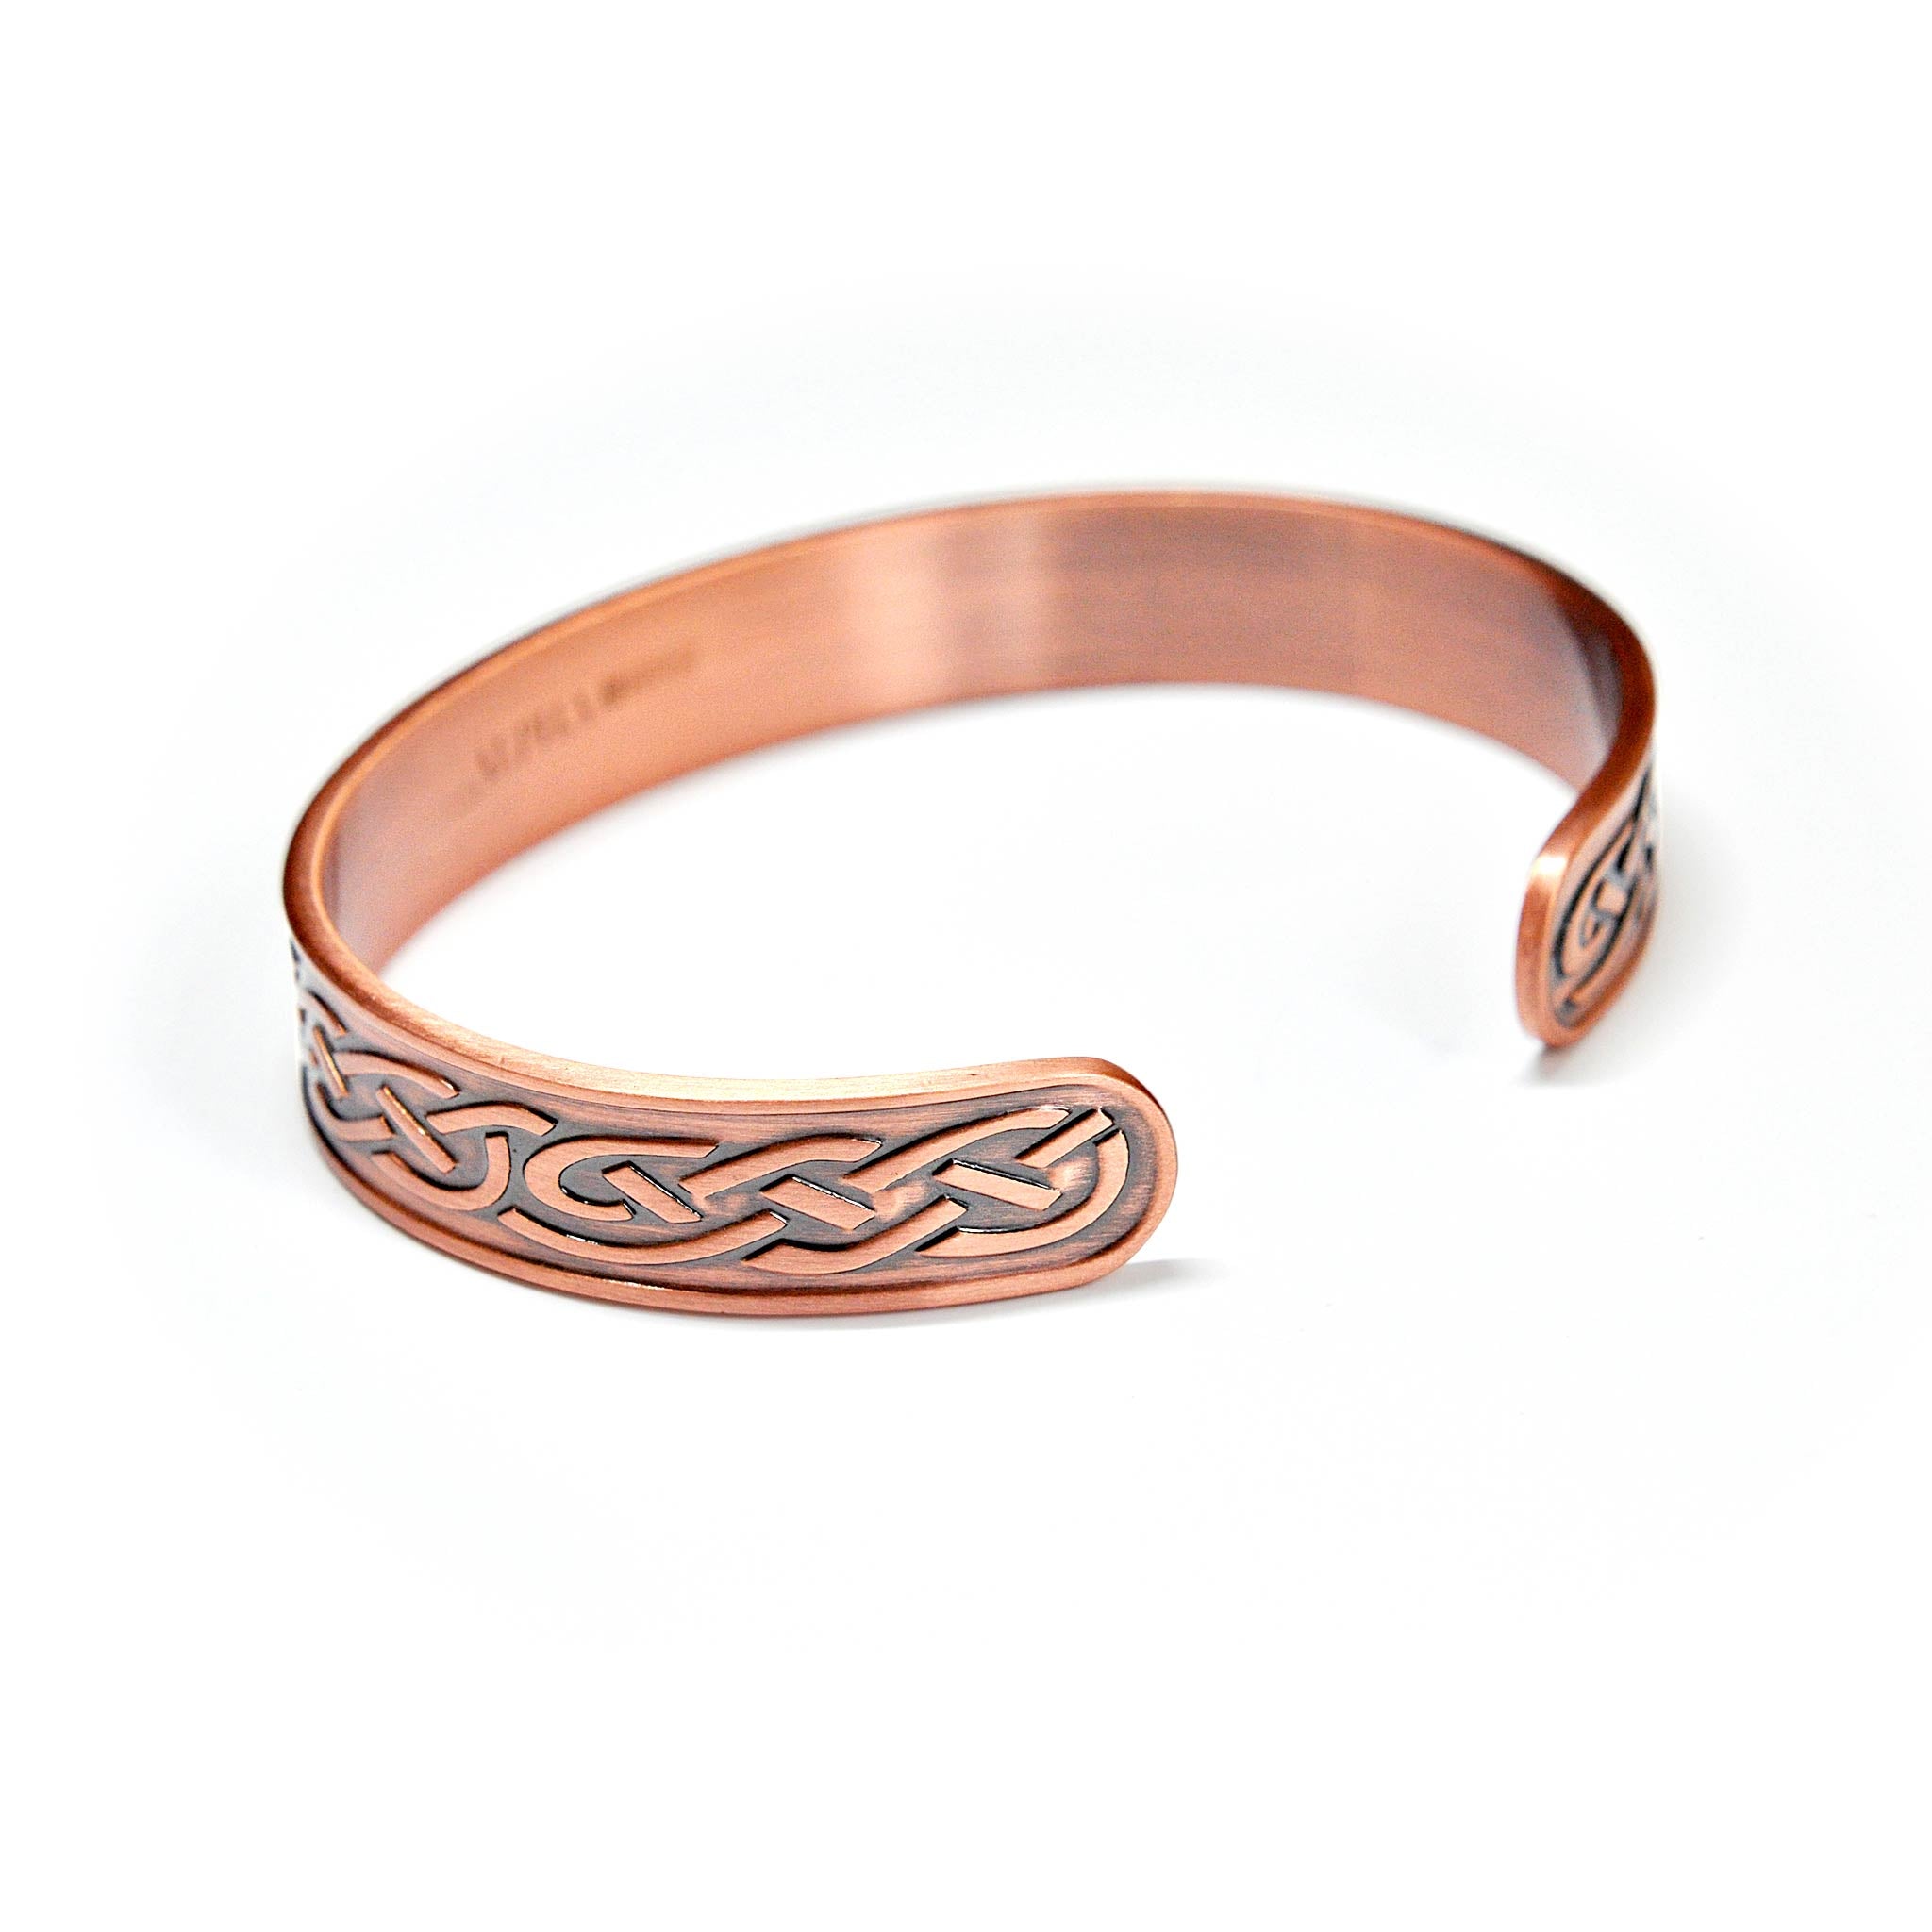 Odin copper magnetic bracelet | ALPHA™ mens